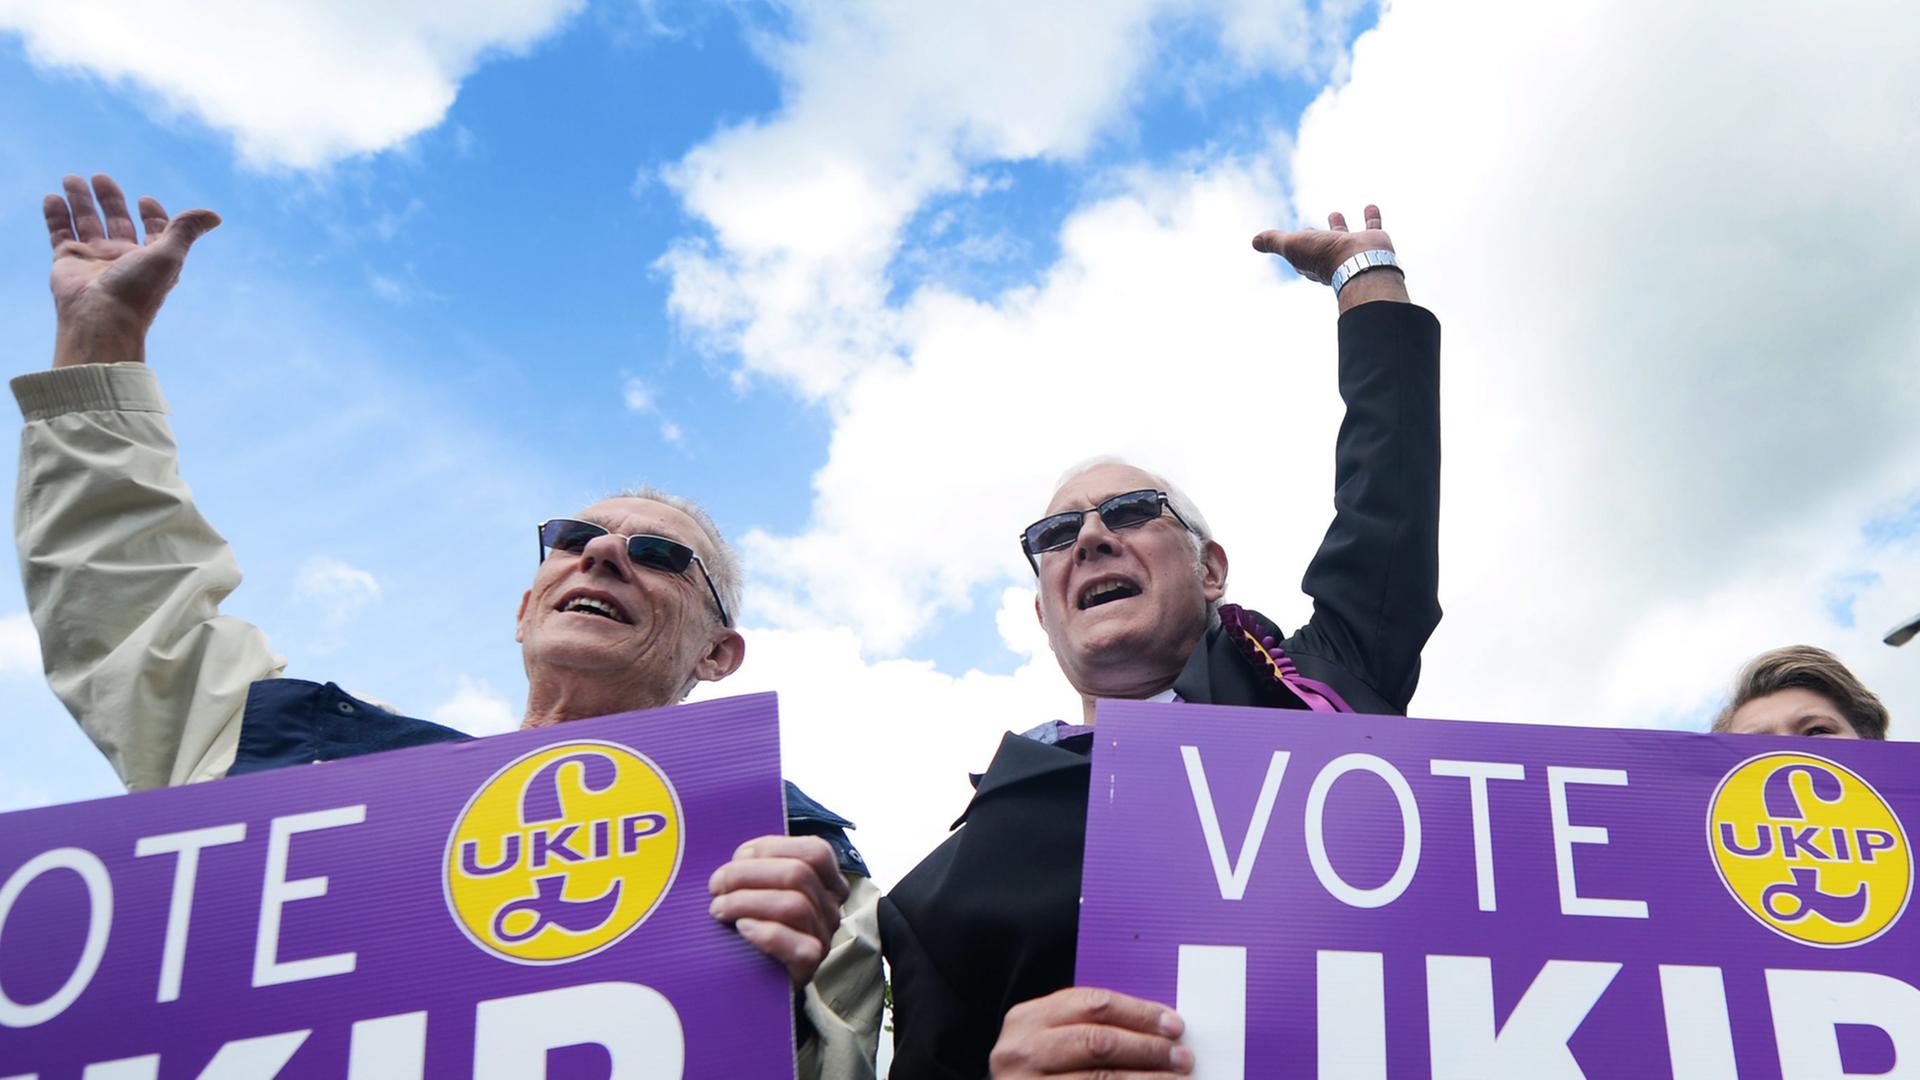 Anhänger der UKIP-Partei mit Wahlplakaten.